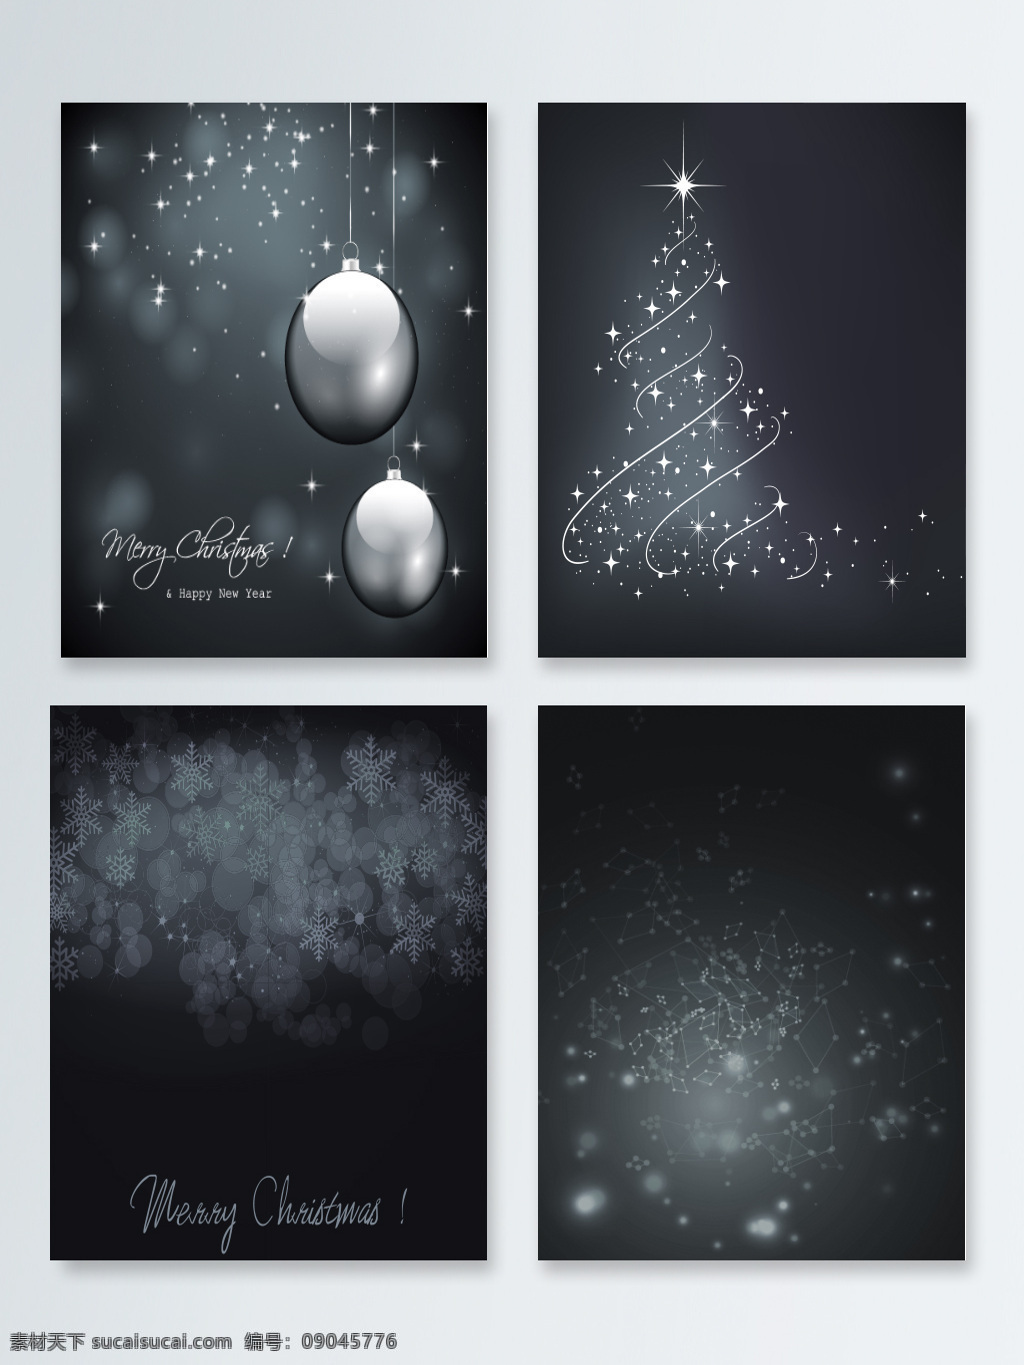 灰色 背景 圣诞 圆球 黑白 几何 节日 快乐 立体 圣诞树 音符 音乐